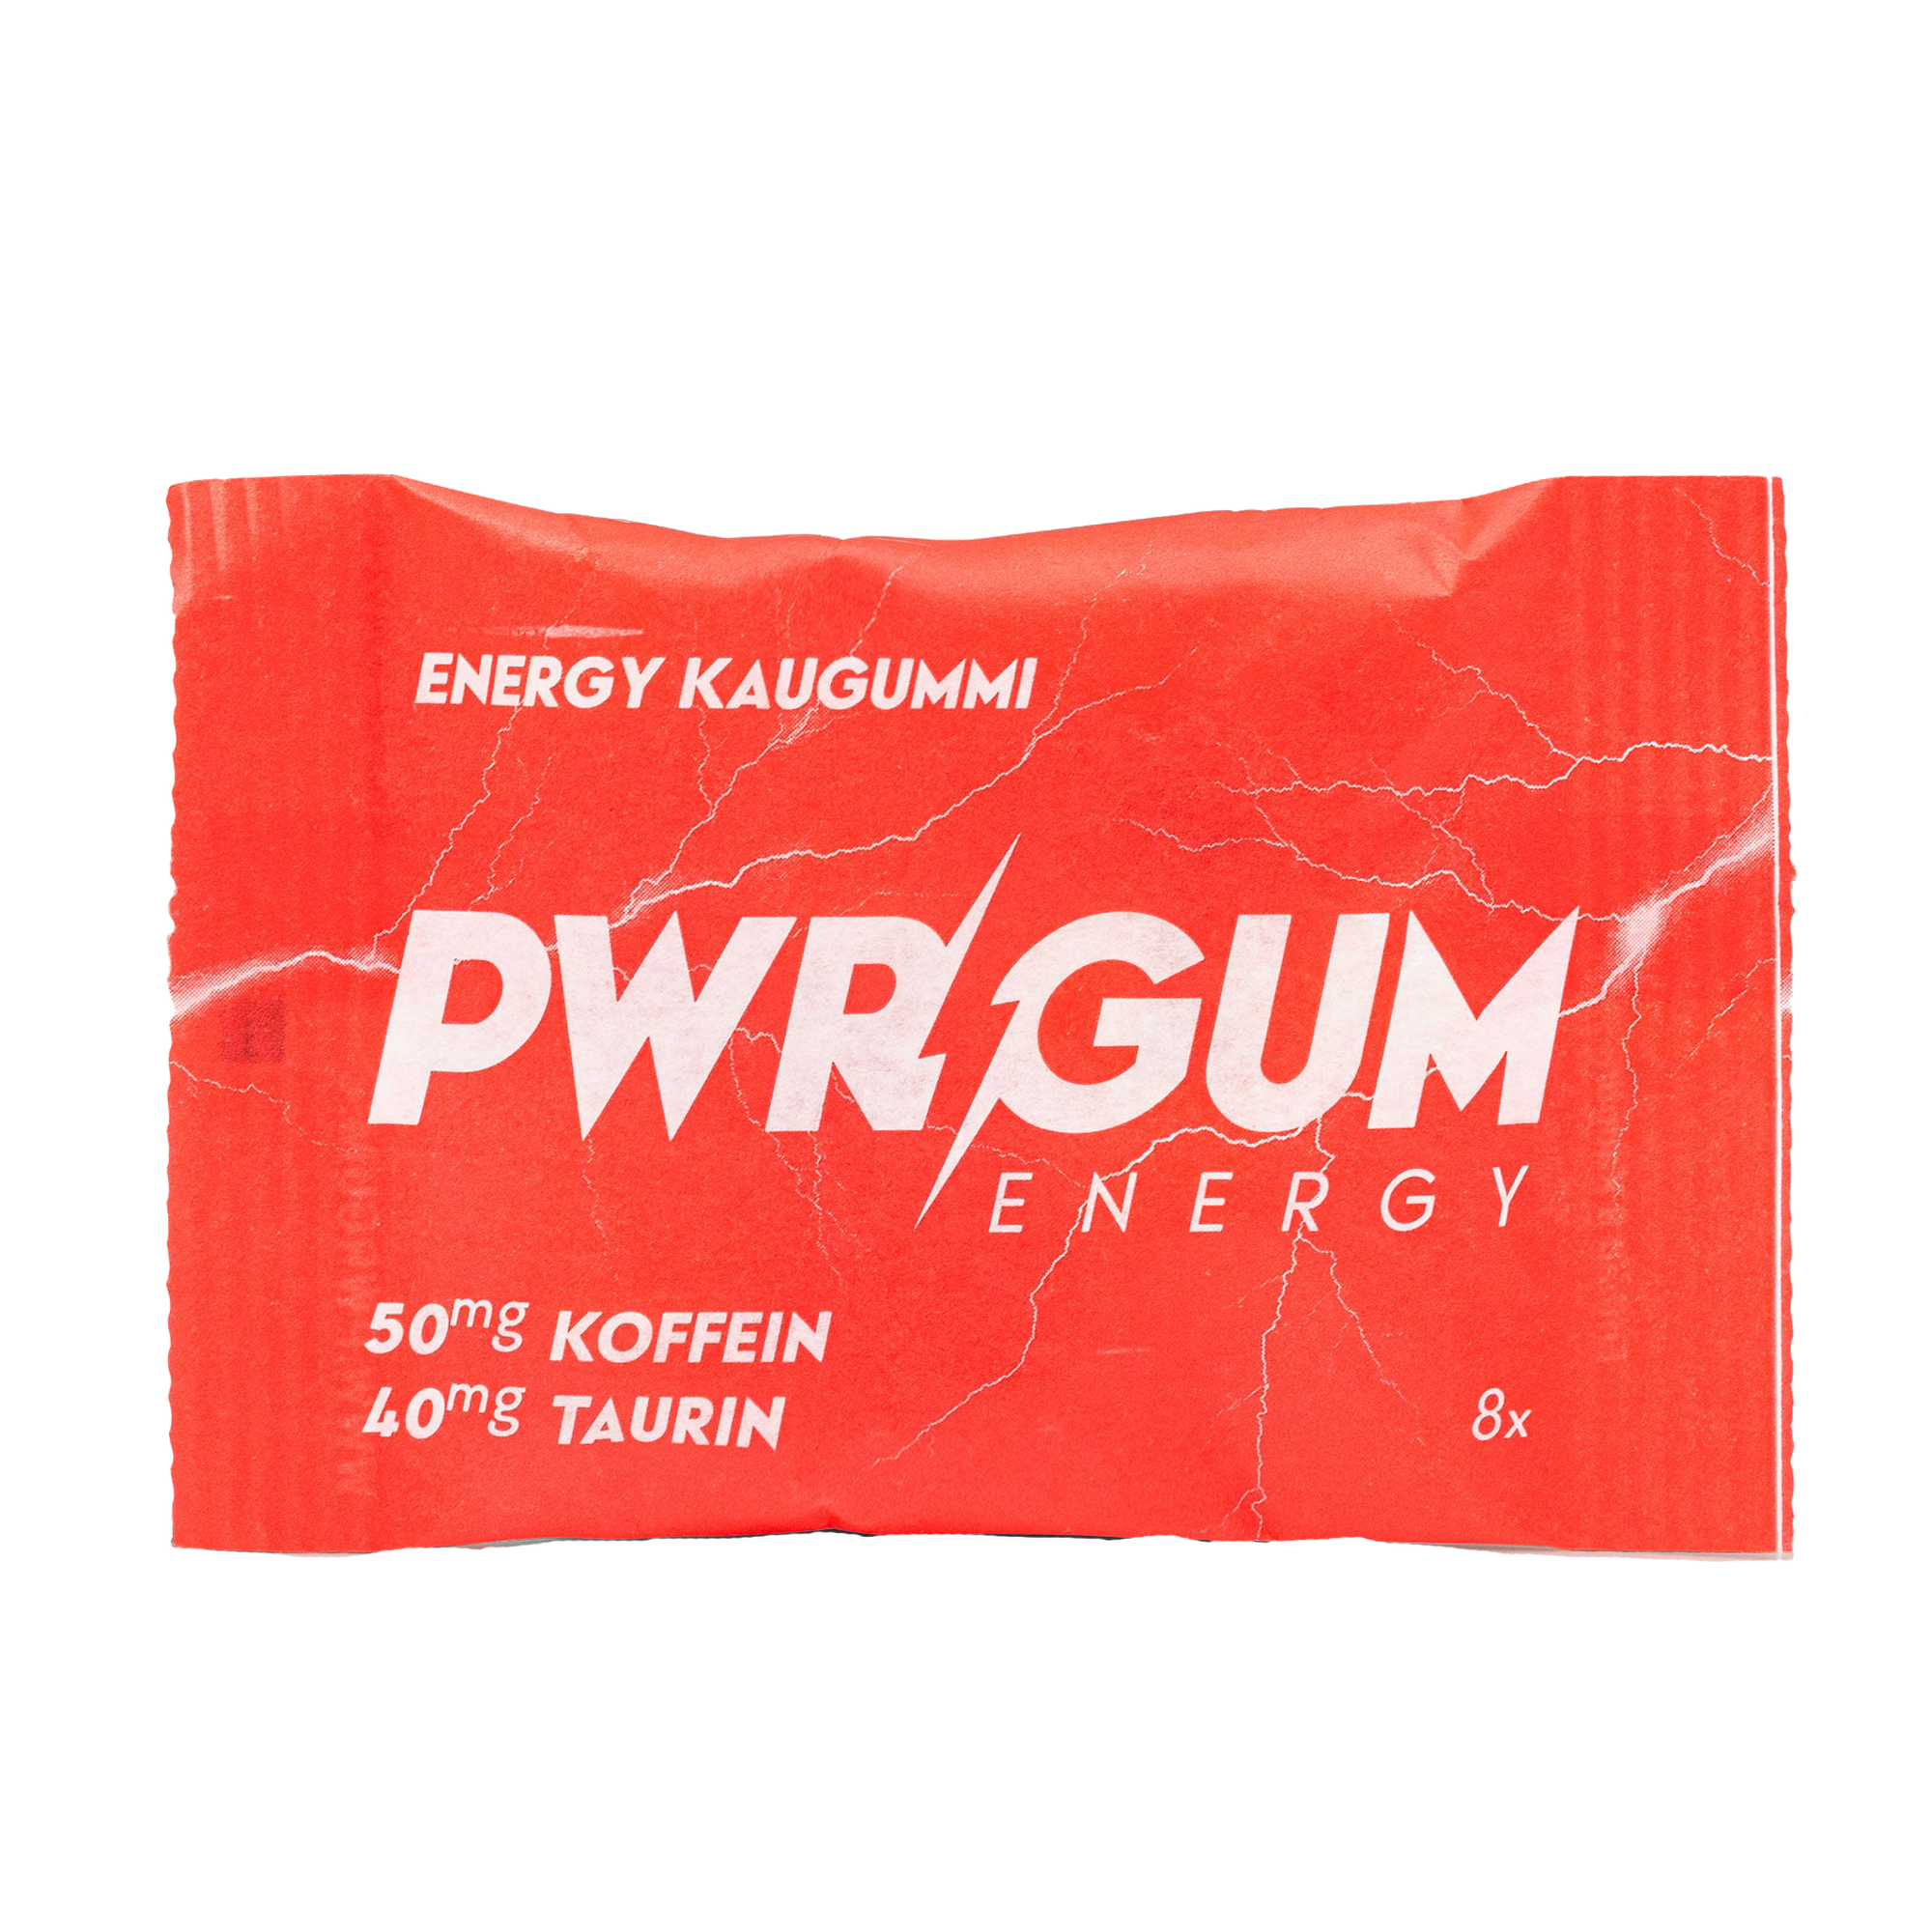 PWRGUM - Energy